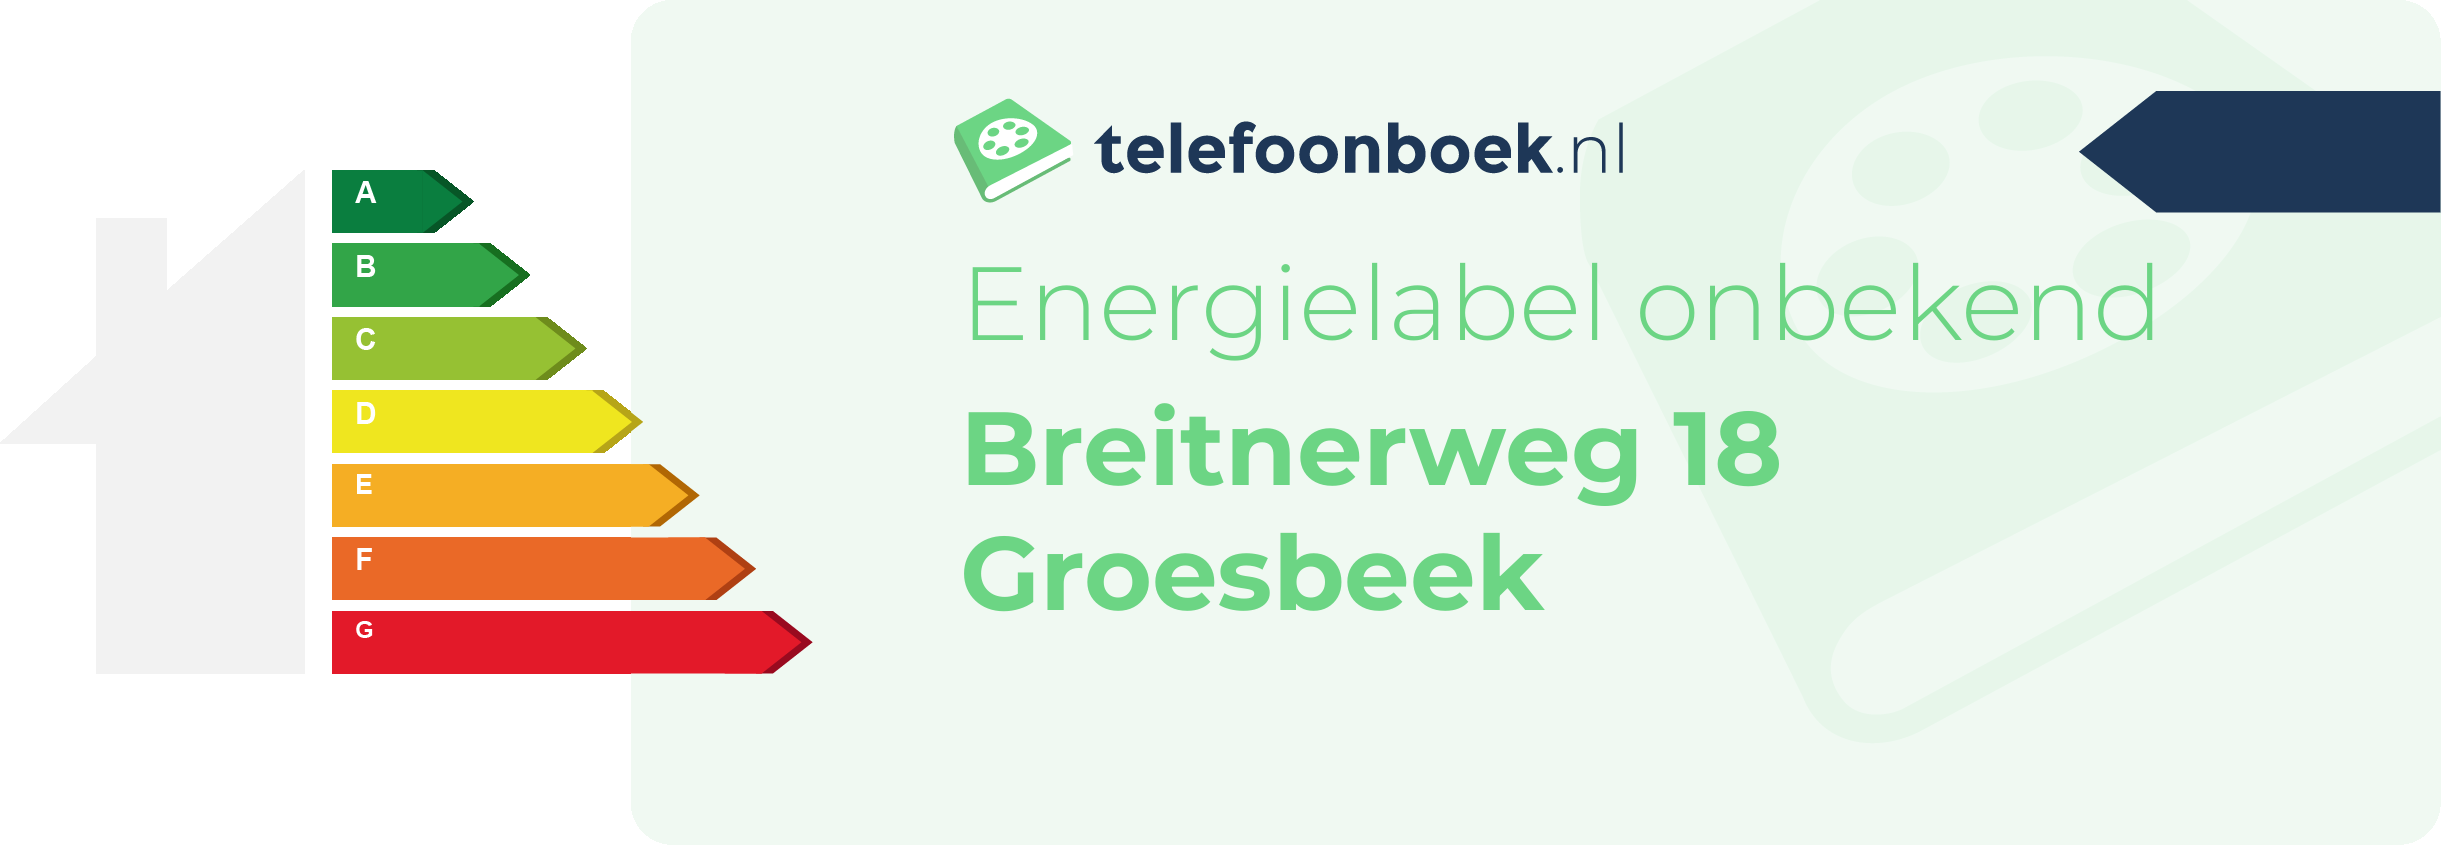 Energielabel Breitnerweg 18 Groesbeek